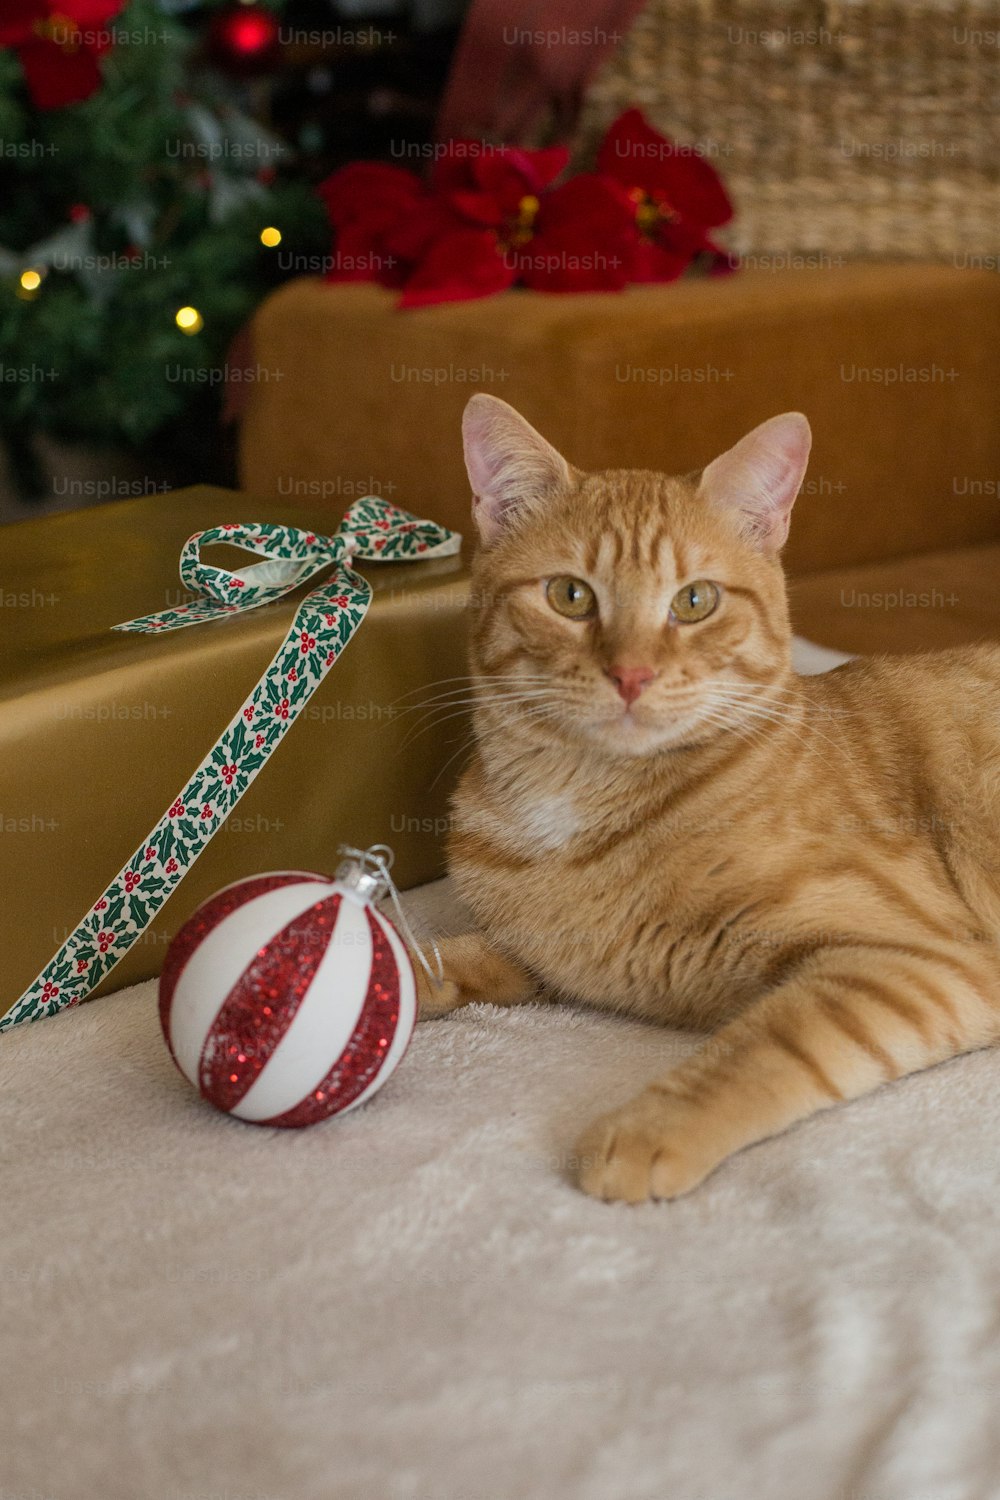 Un gato tendido en el suelo junto a un adorno navideño